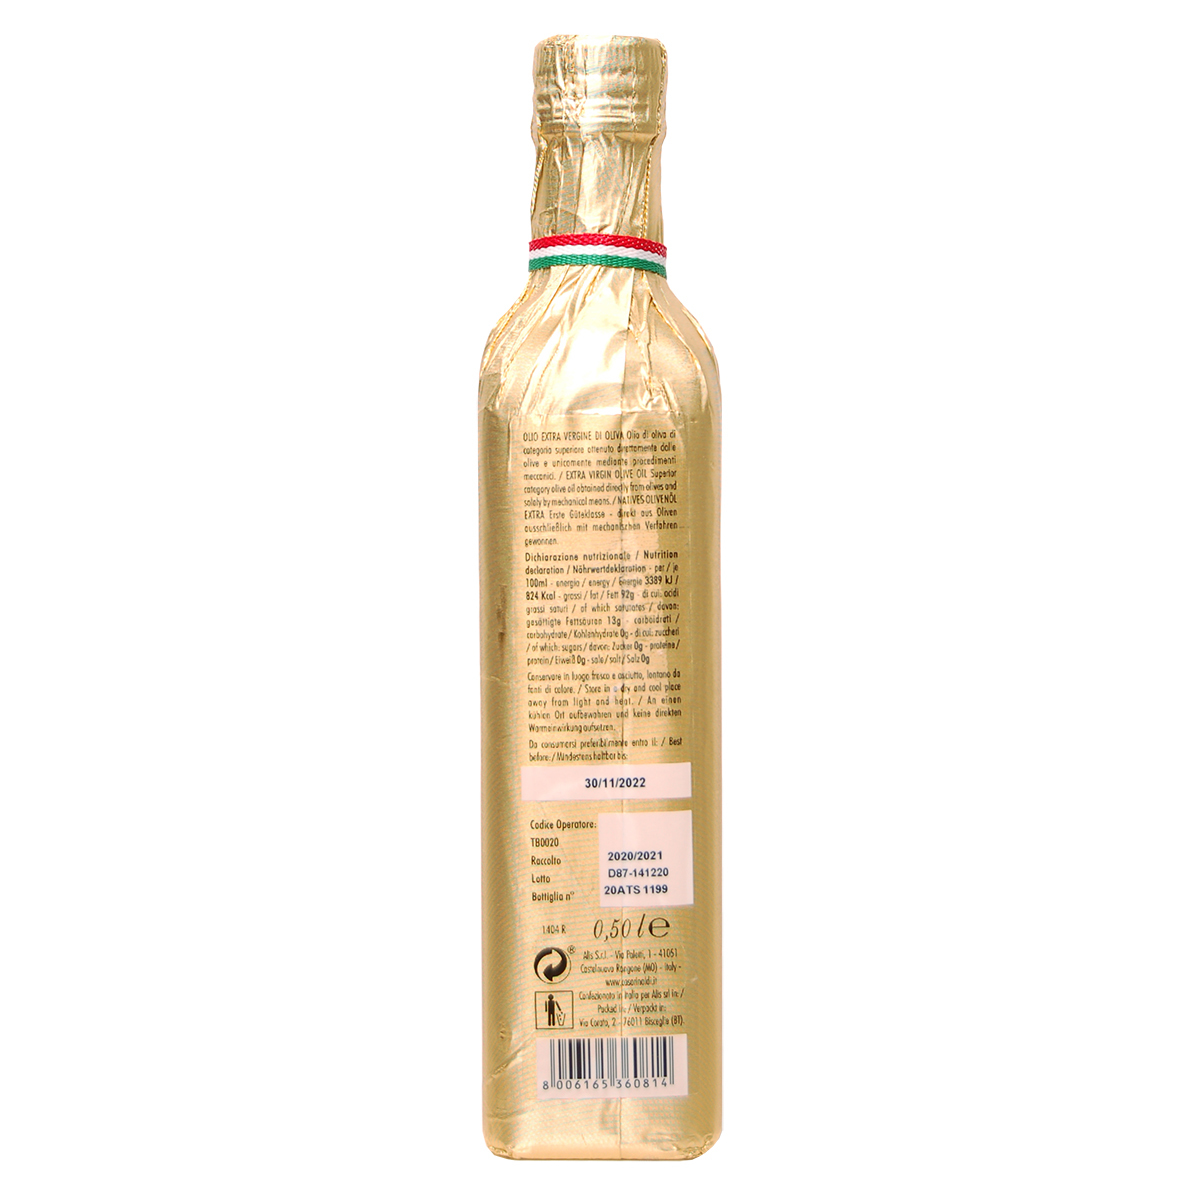 Масло Casa Rinaldi оливковое Extra Virgine DOP из региона Апулия в золотой обертке 500 мл